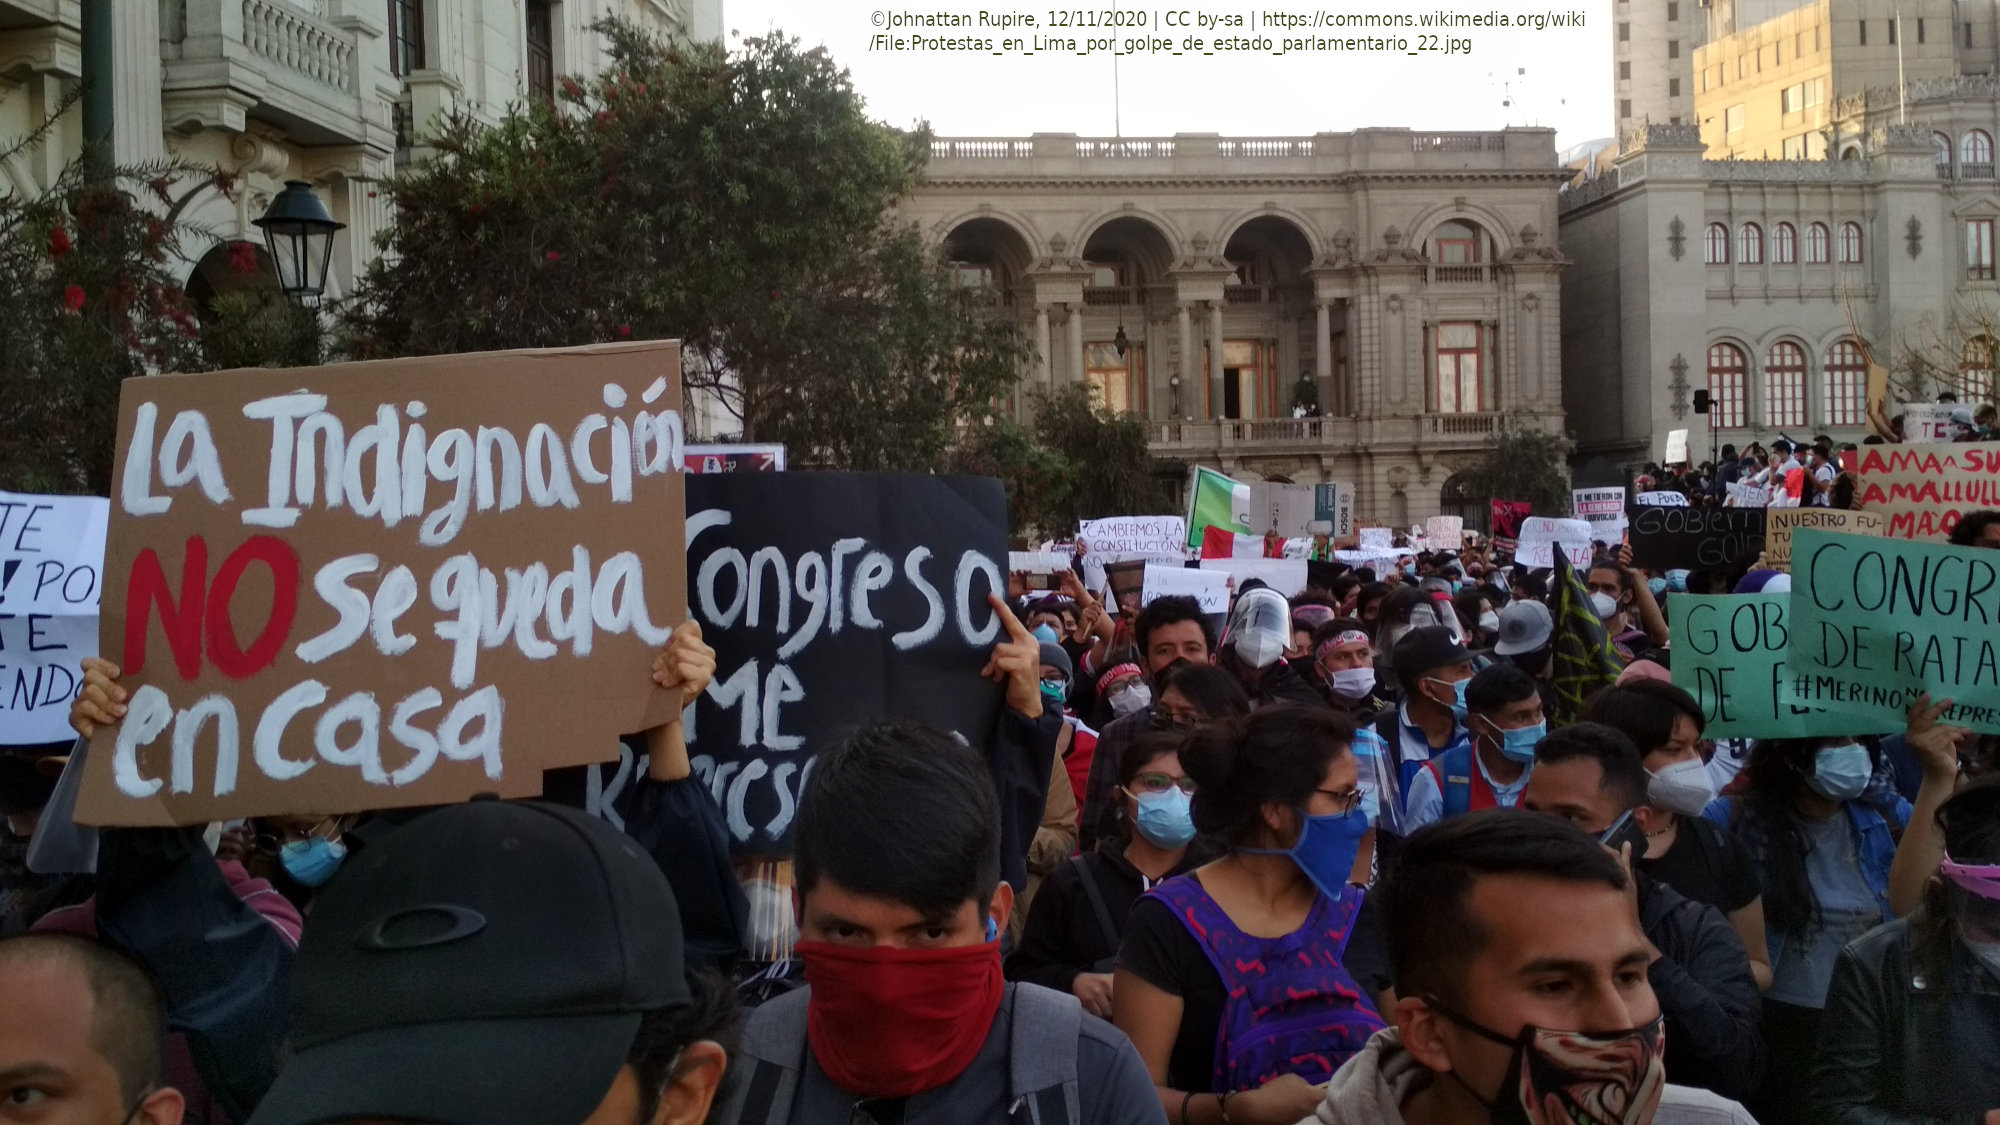 manifestación contra gobierno de Merino. Foto de Johnattan Rupire (en la Wikipedia, CC by-sa).